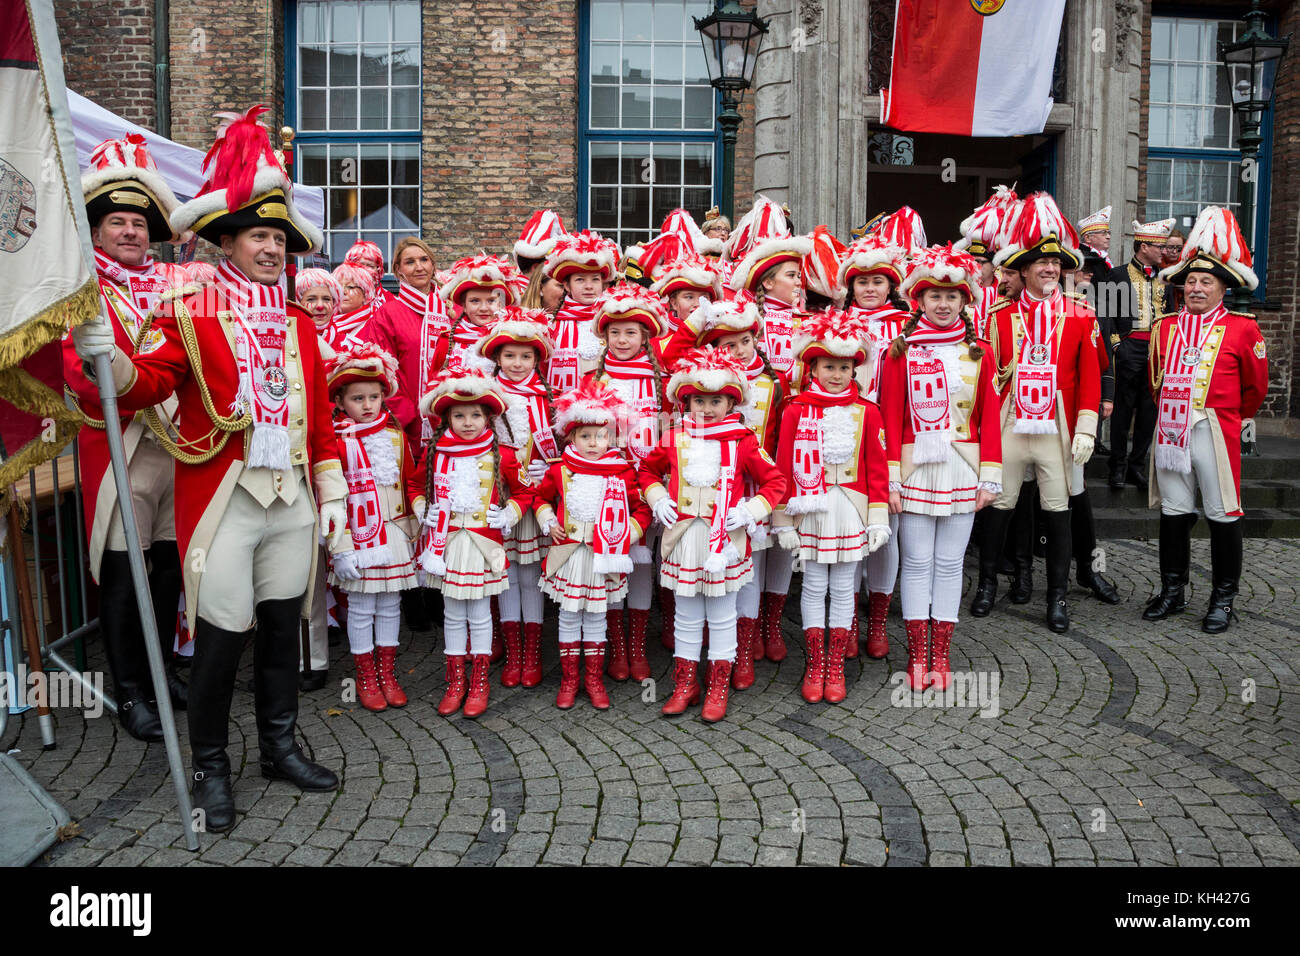 La saison du carnaval allemand commence traditionnellement par l'événement Hoppeditz Erwachen le 11 novembre à Düsseldorf, en Allemagne, et se déroule à Ash mercredi l'année suivante. Tanzmariechen traditionnel, danseuses de majorette. Banque D'Images